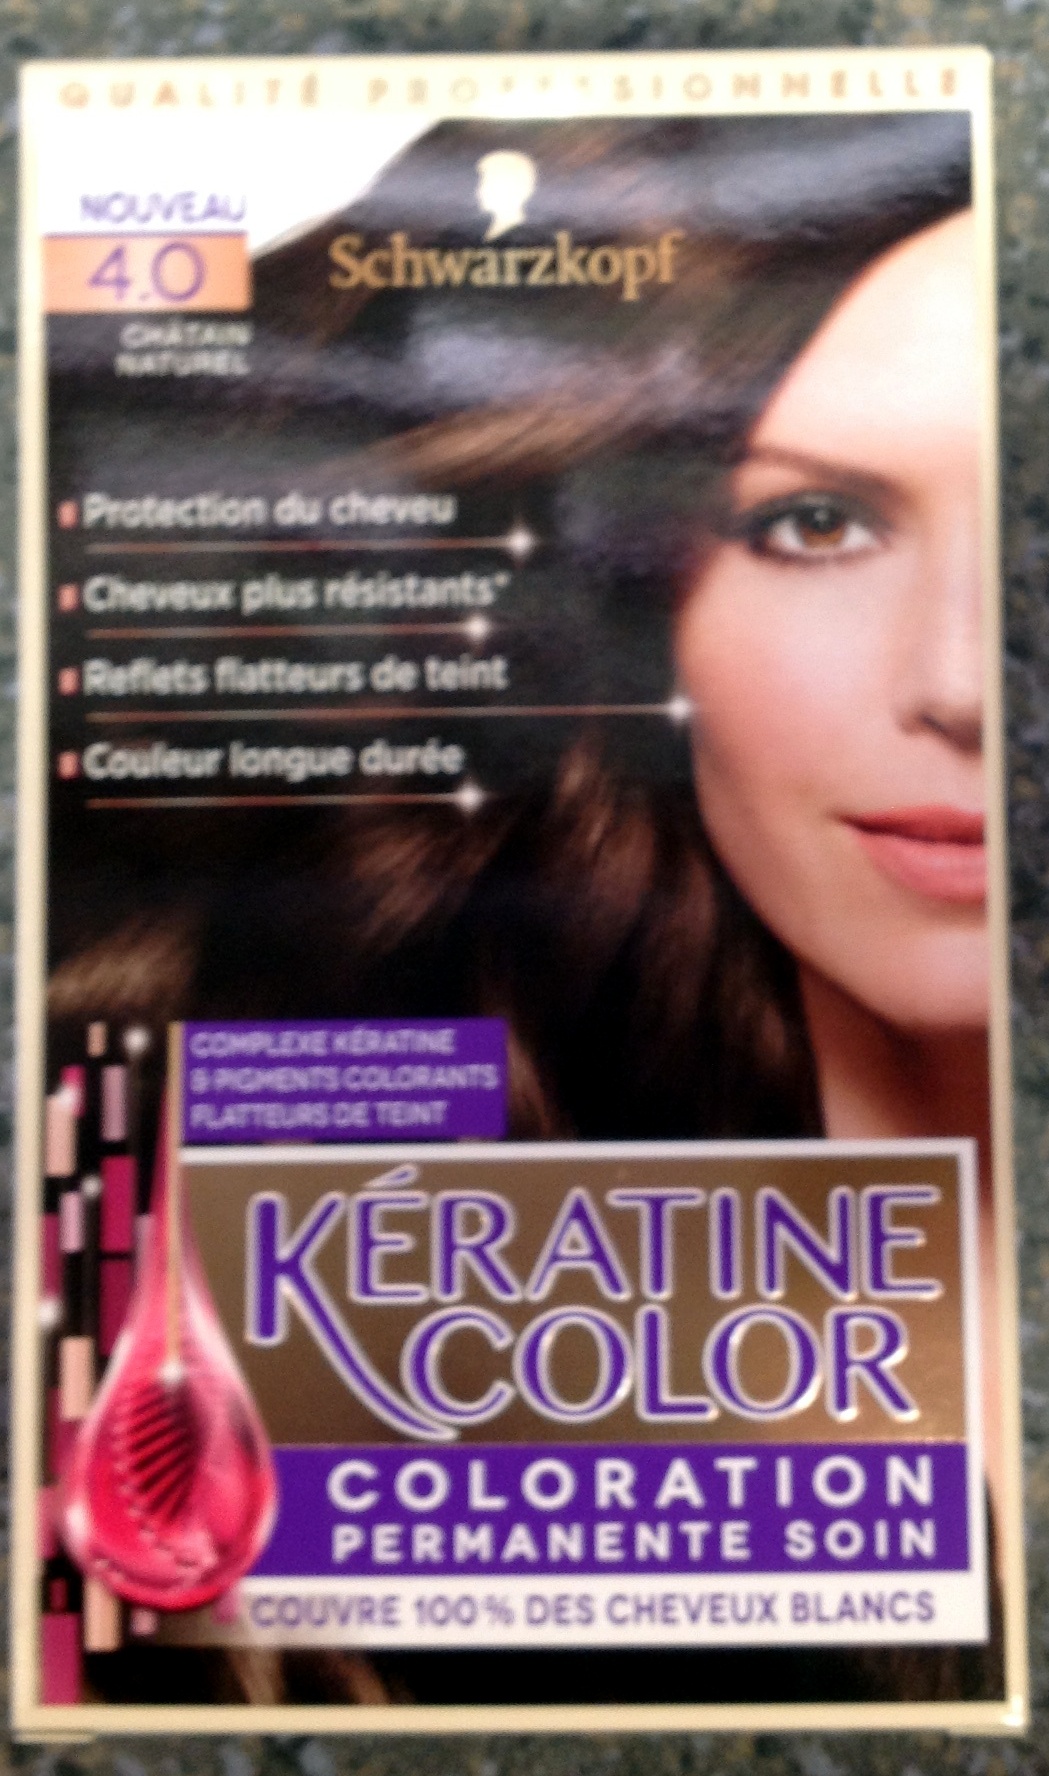 Kératine Color Châtain Naturel 4.0 - Product - fr